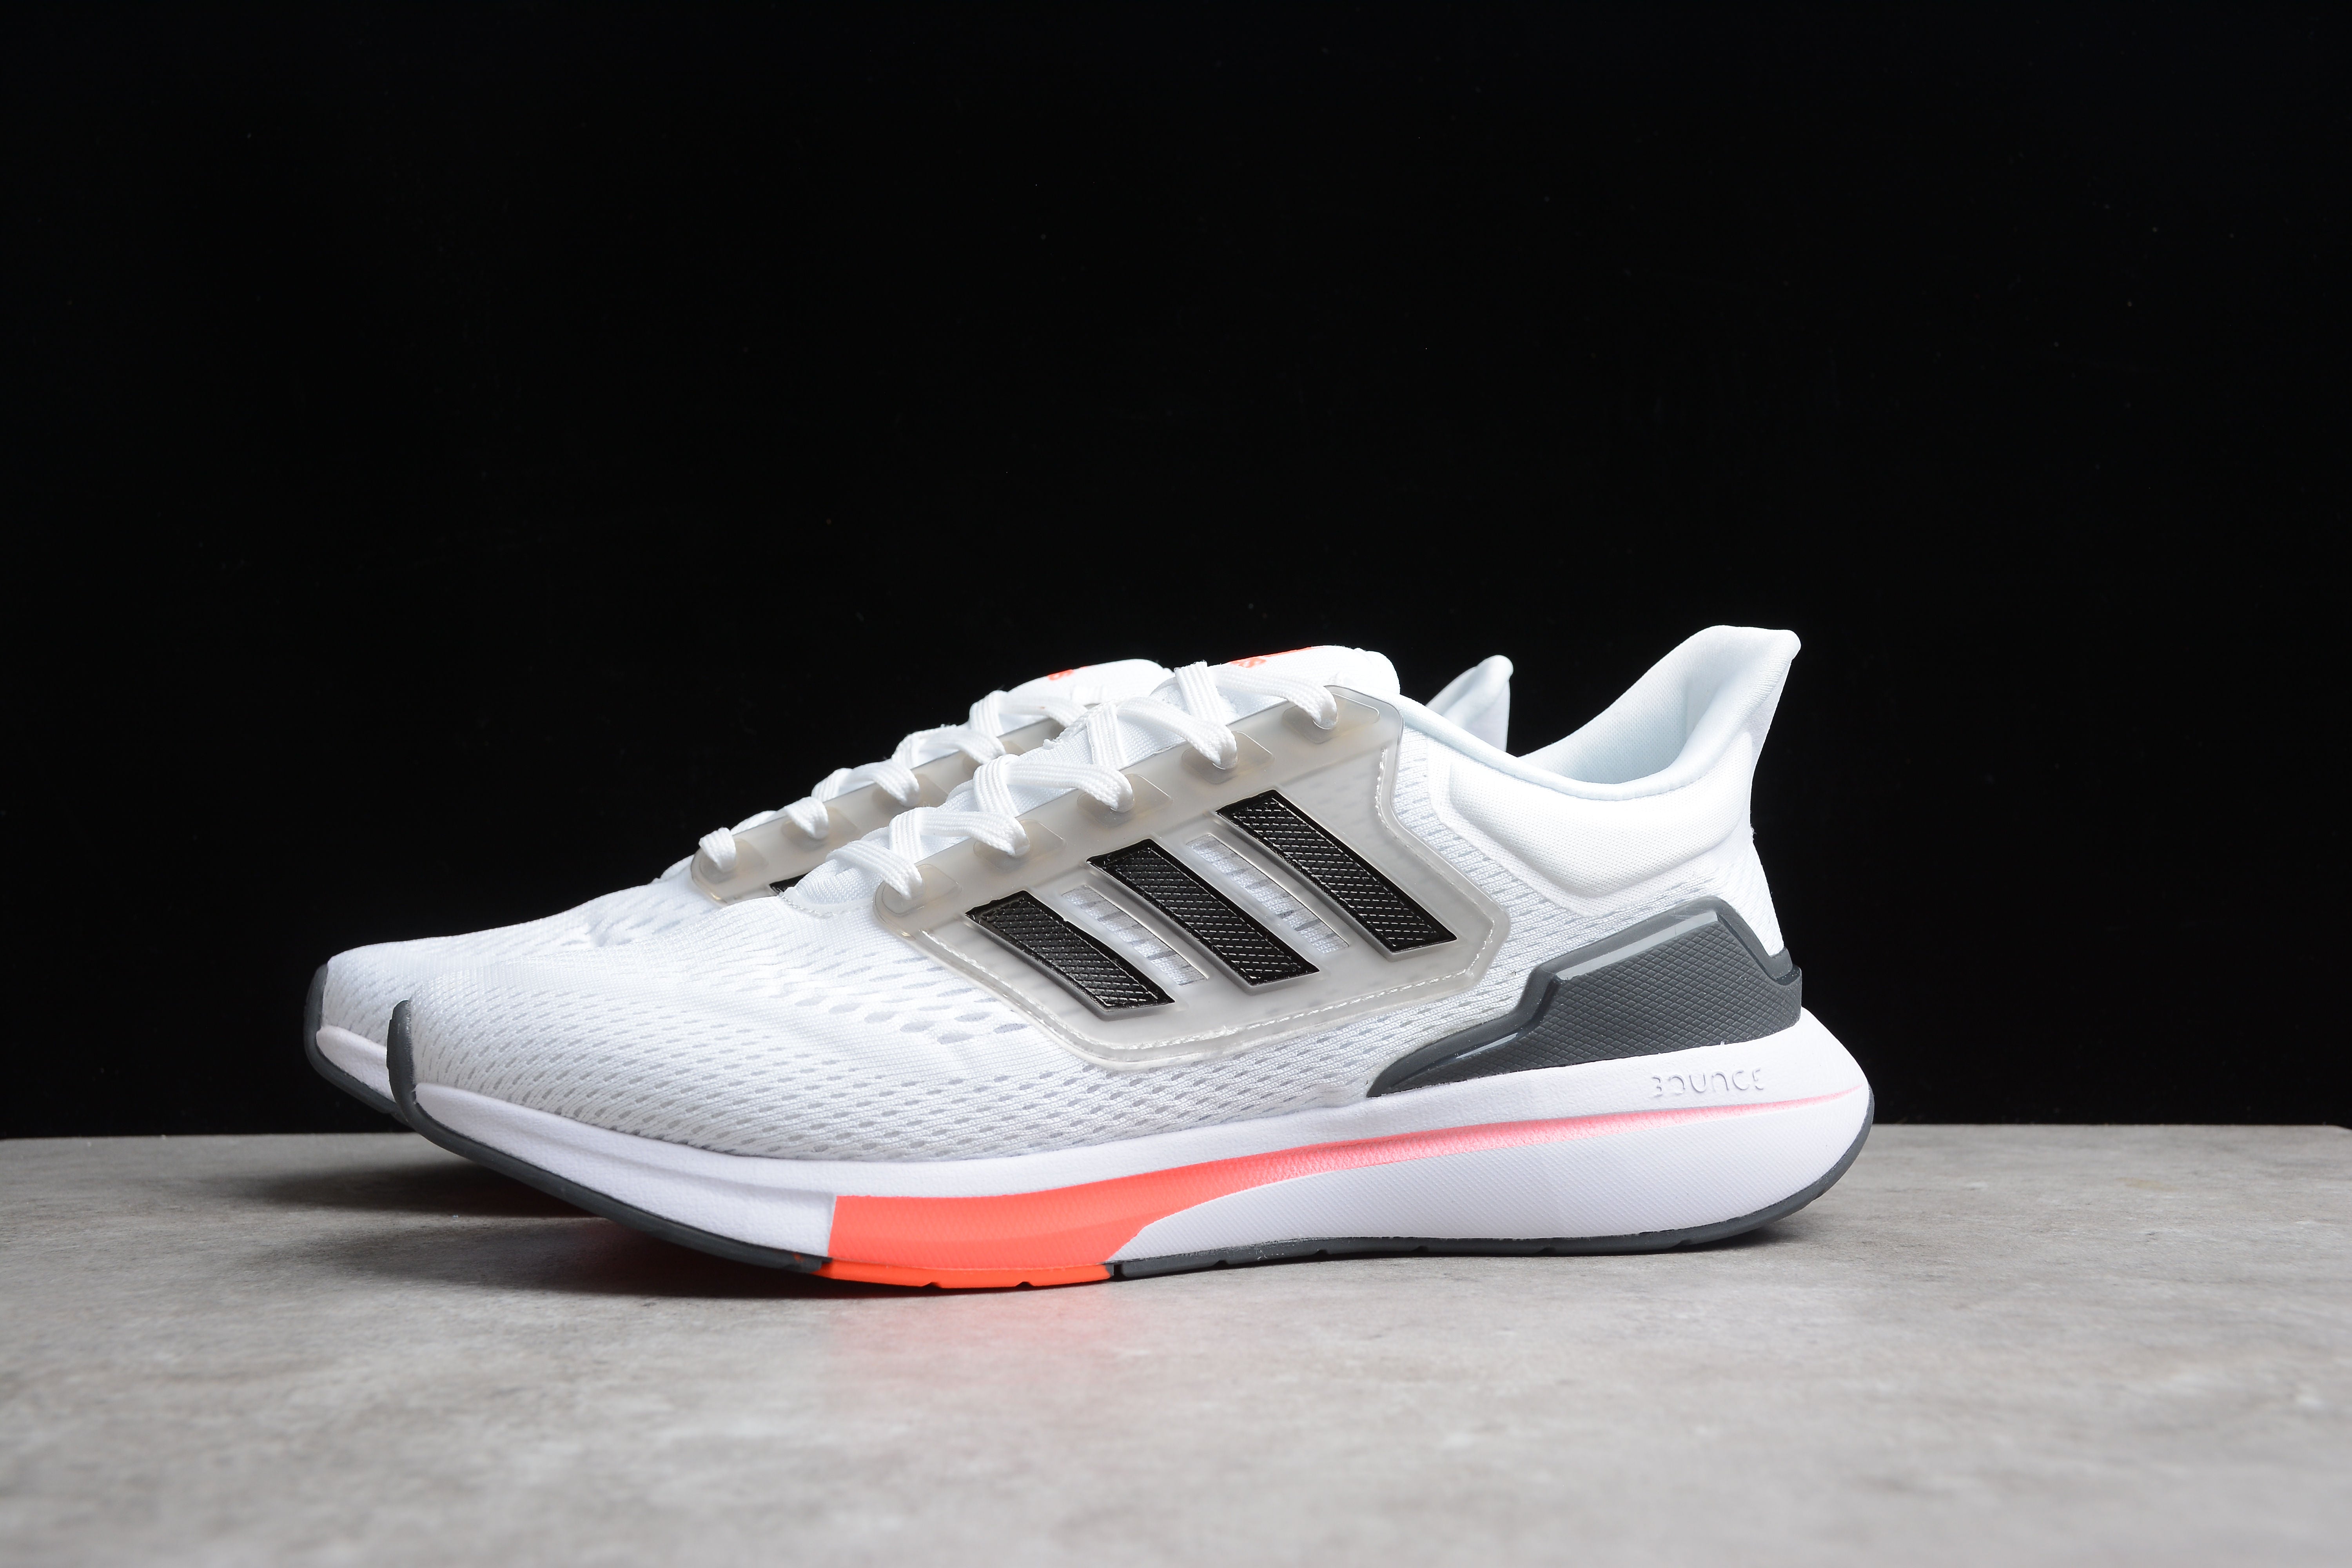 Adidas EQ21 RUN white and orange